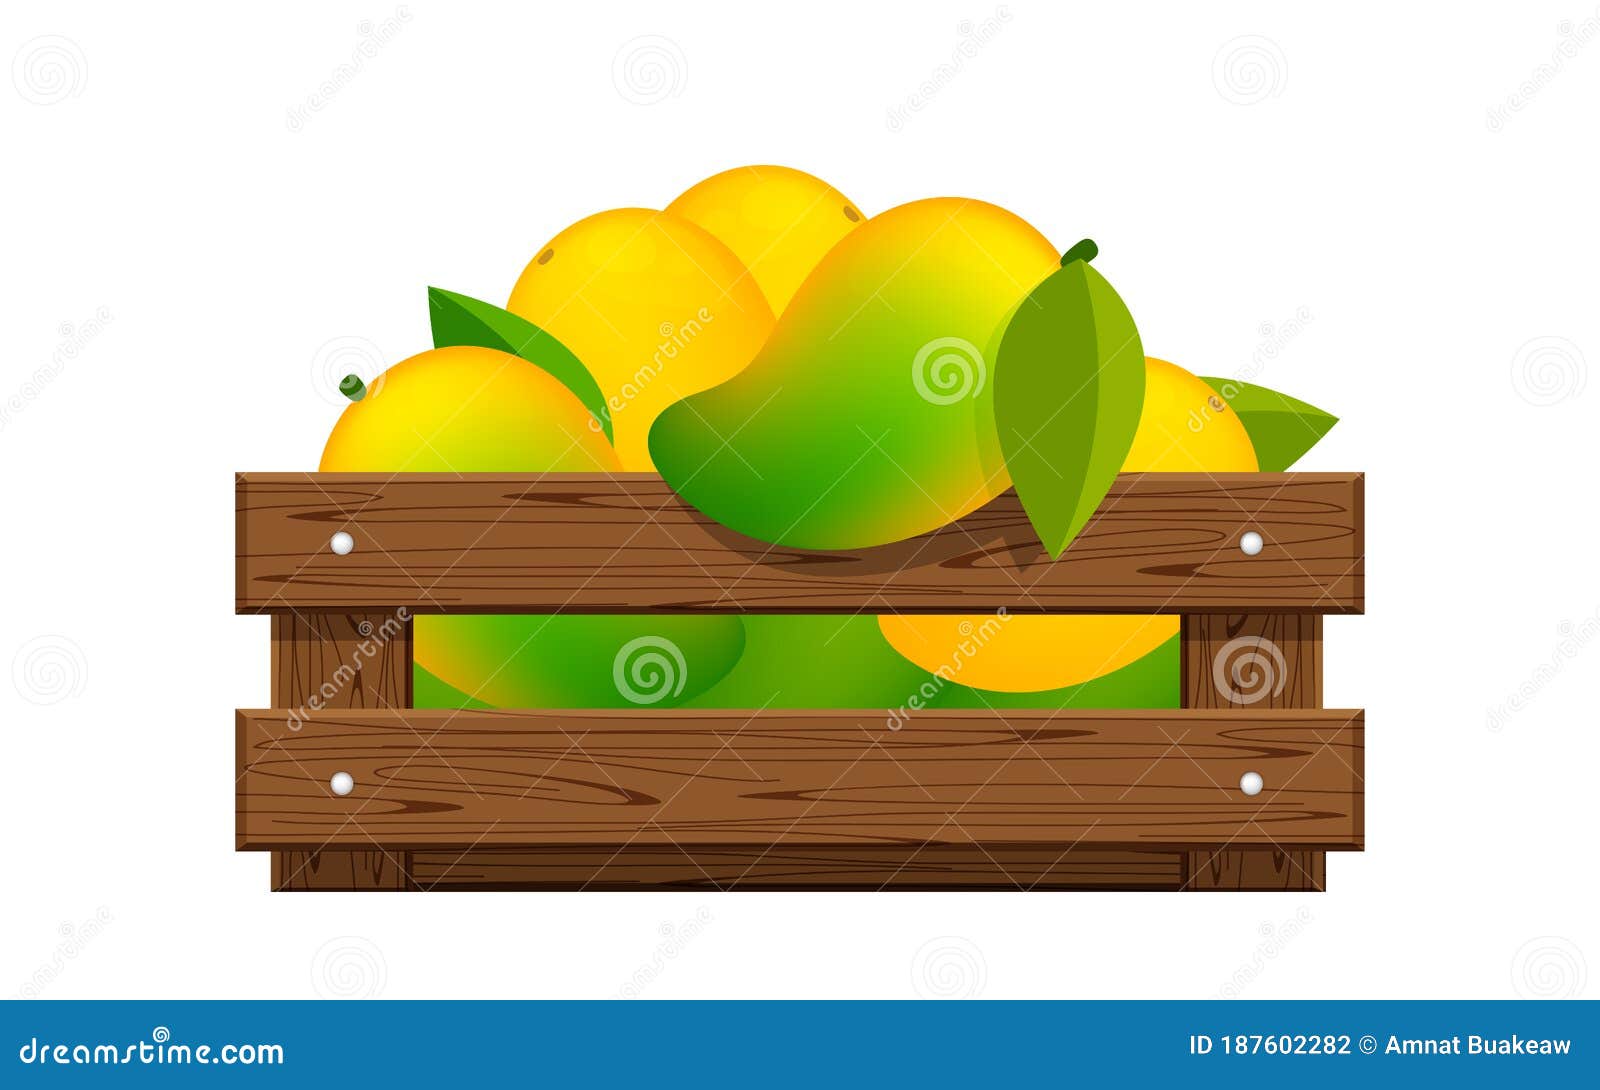 metal y madera de mango levandeo Soporte de mango con texto Home de 11 cm de altura decoración de mesa